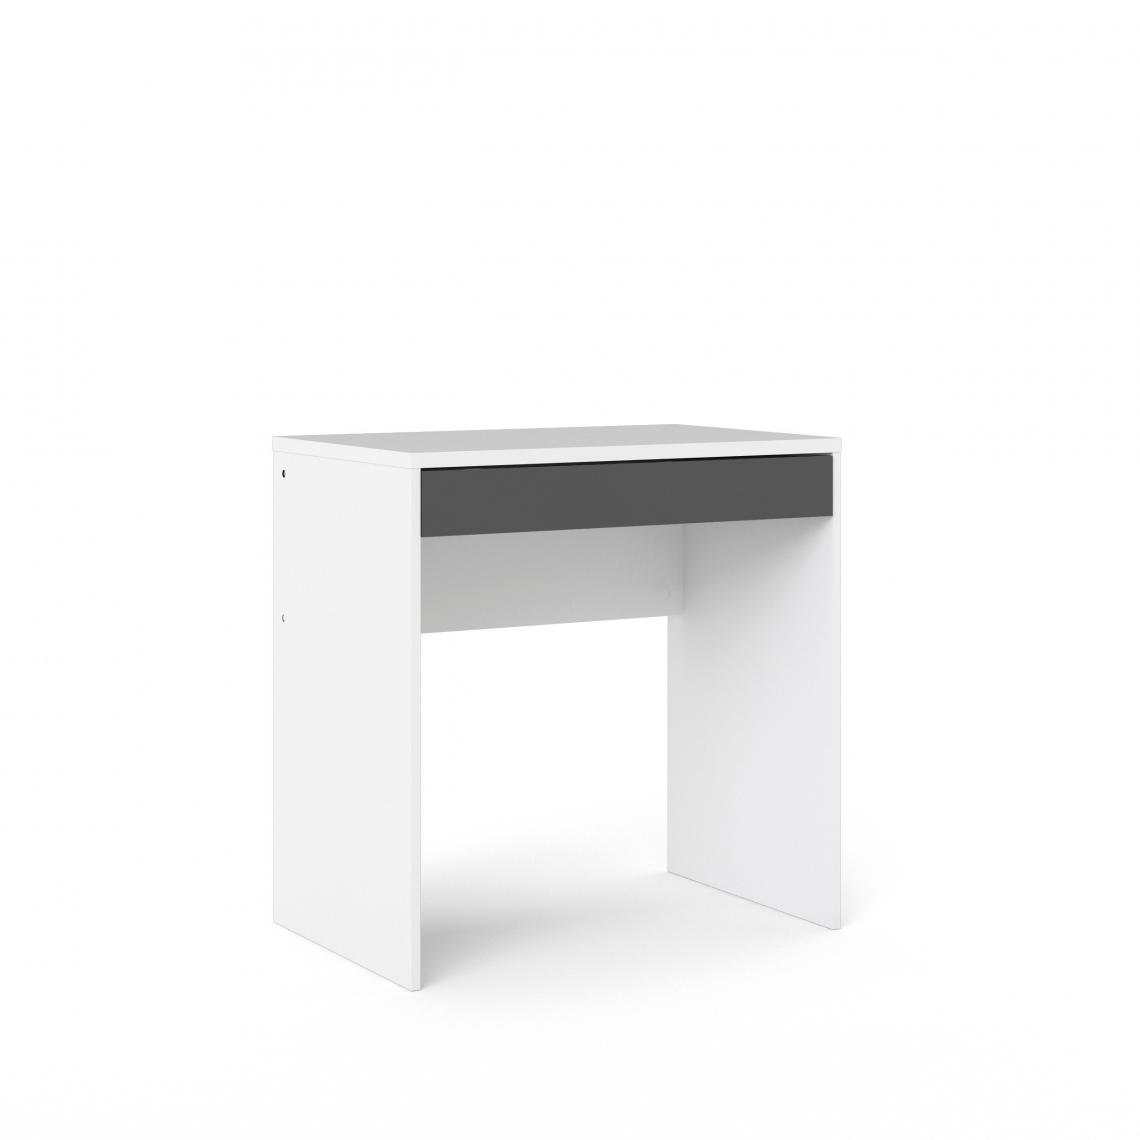 Alter - Bureau linéaire avec un tiroir, couleur blanc et anthracite, Dimensions 74 x 76 x 48 cm - Bureaux